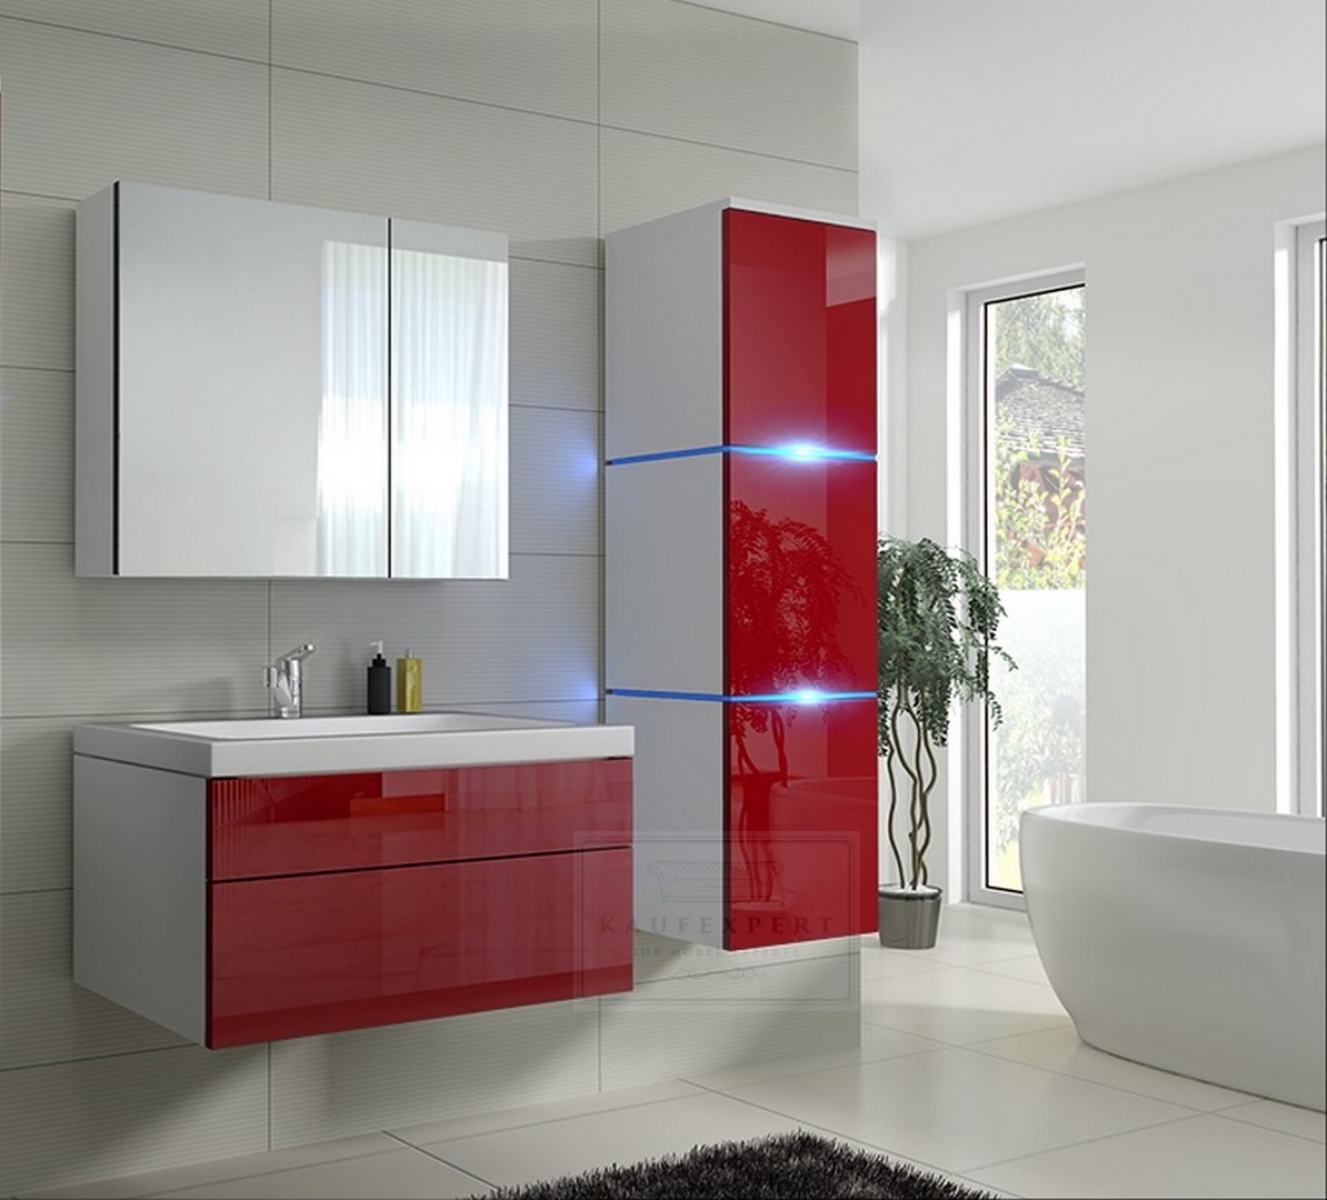 Badmöbel-Set Lux 1 NEW Rot Hochglanz/Weiß KERAMIK Waschbecken Badezimmer Led Beleuchtung Badezimmermöbel Keramikbecken